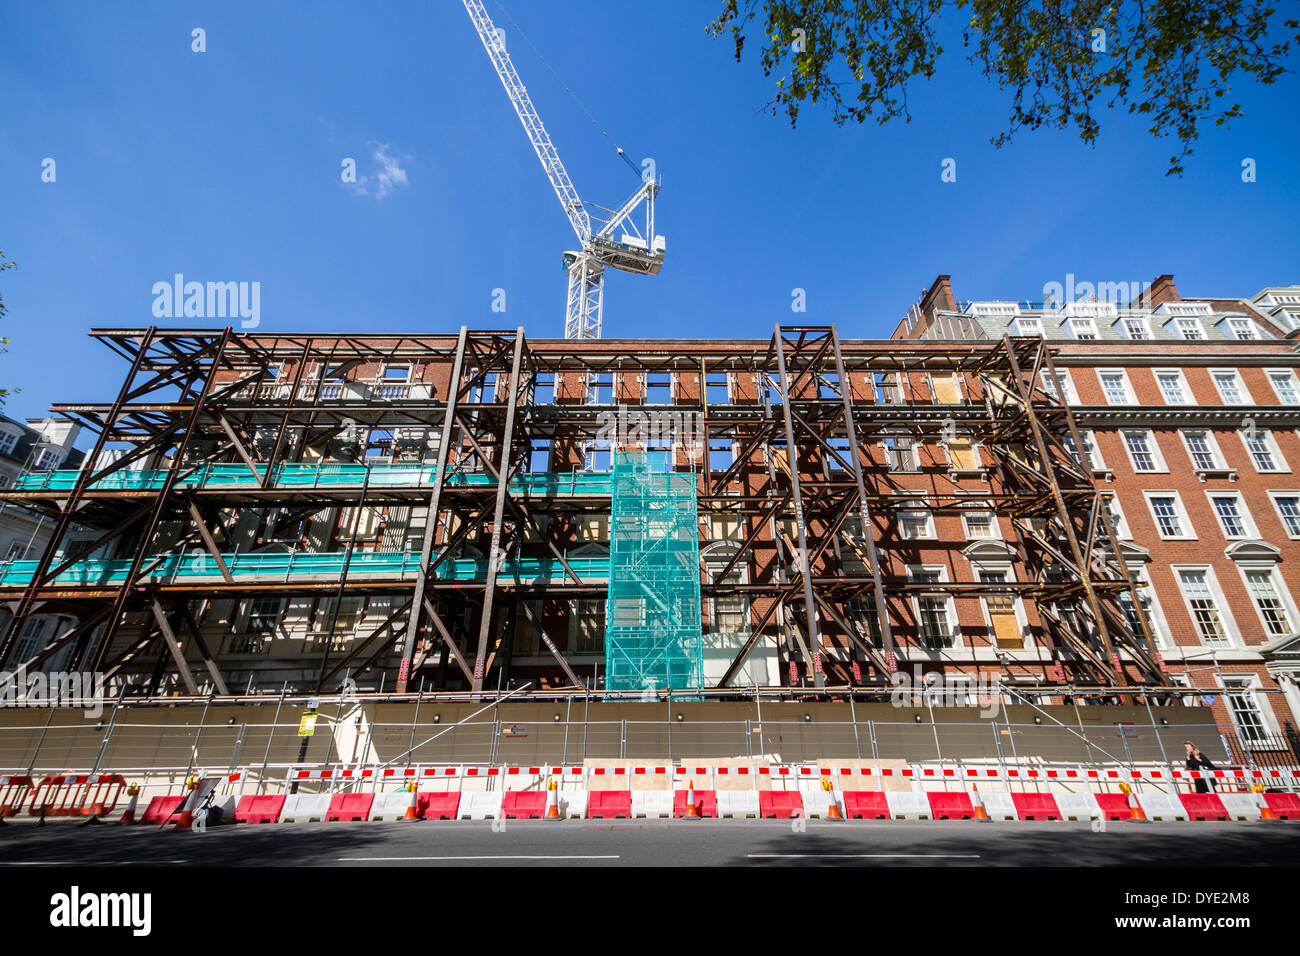 L'effondrement des bâtiments entraîne la mort dans la région de Grosvenor Square, Londres. Banque D'Images